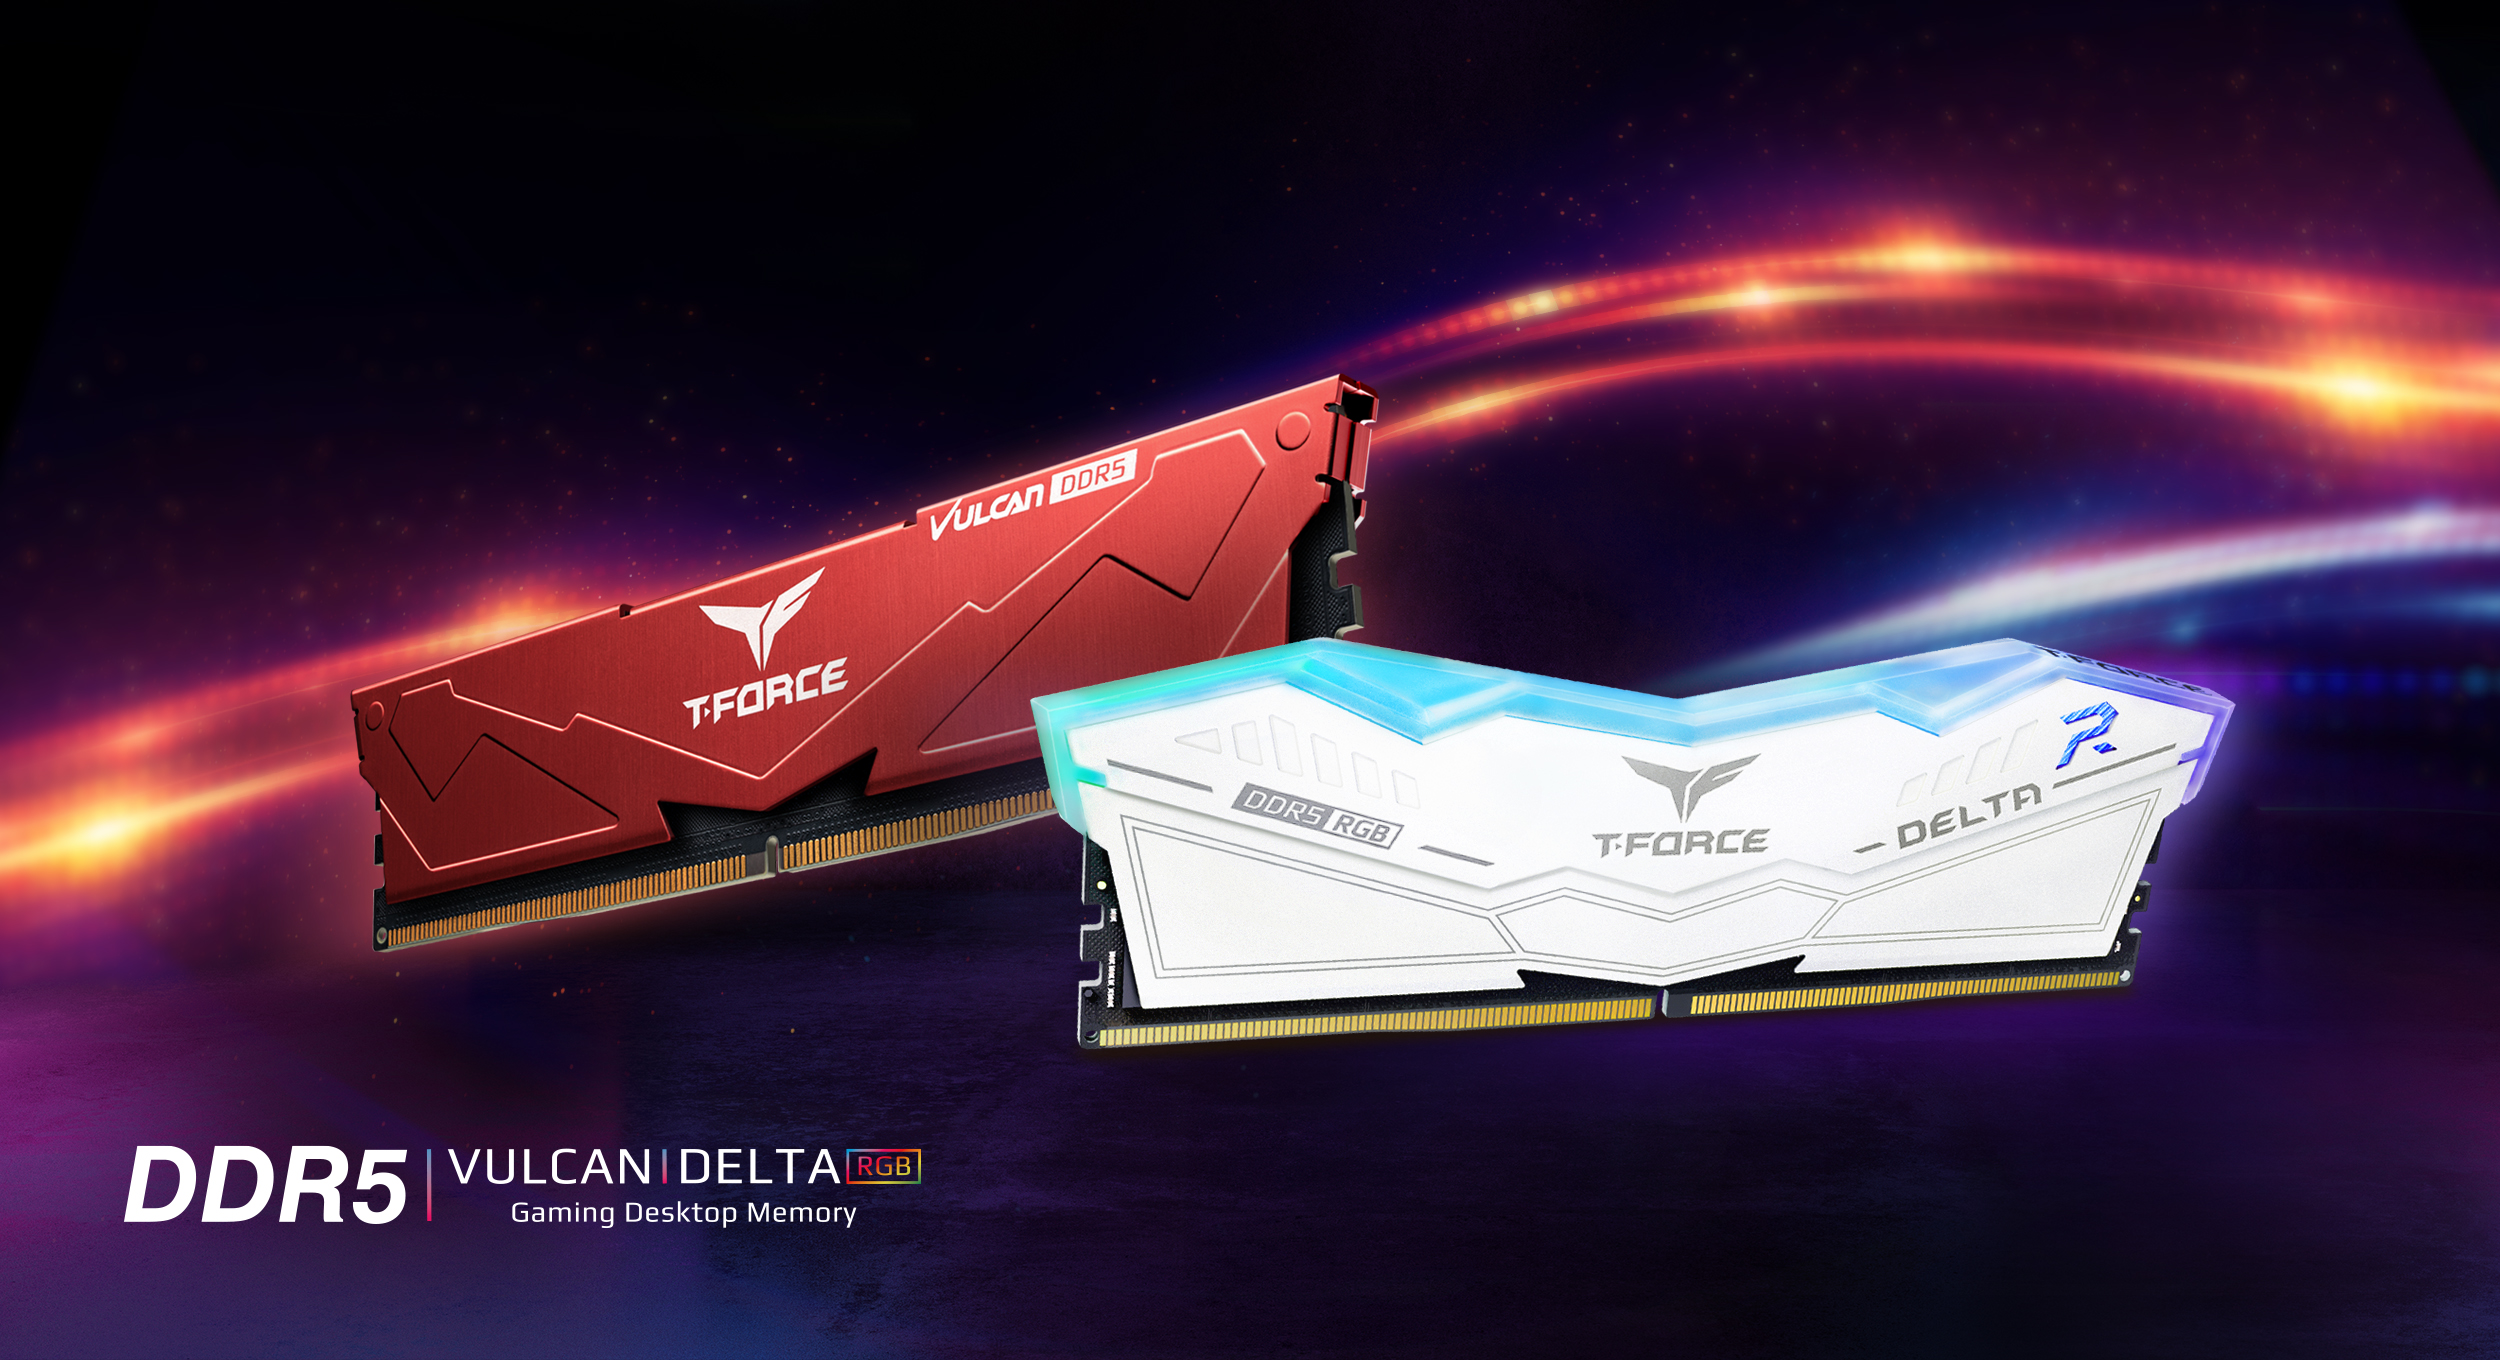 Компания TEAMGROUP выходит на рынок с оперативной памятью T-FORCE DELTA RGB DDR5 и VULCAN DDR5 с возможностью оверклокинга – большой скачок по показателям скорости работы системы